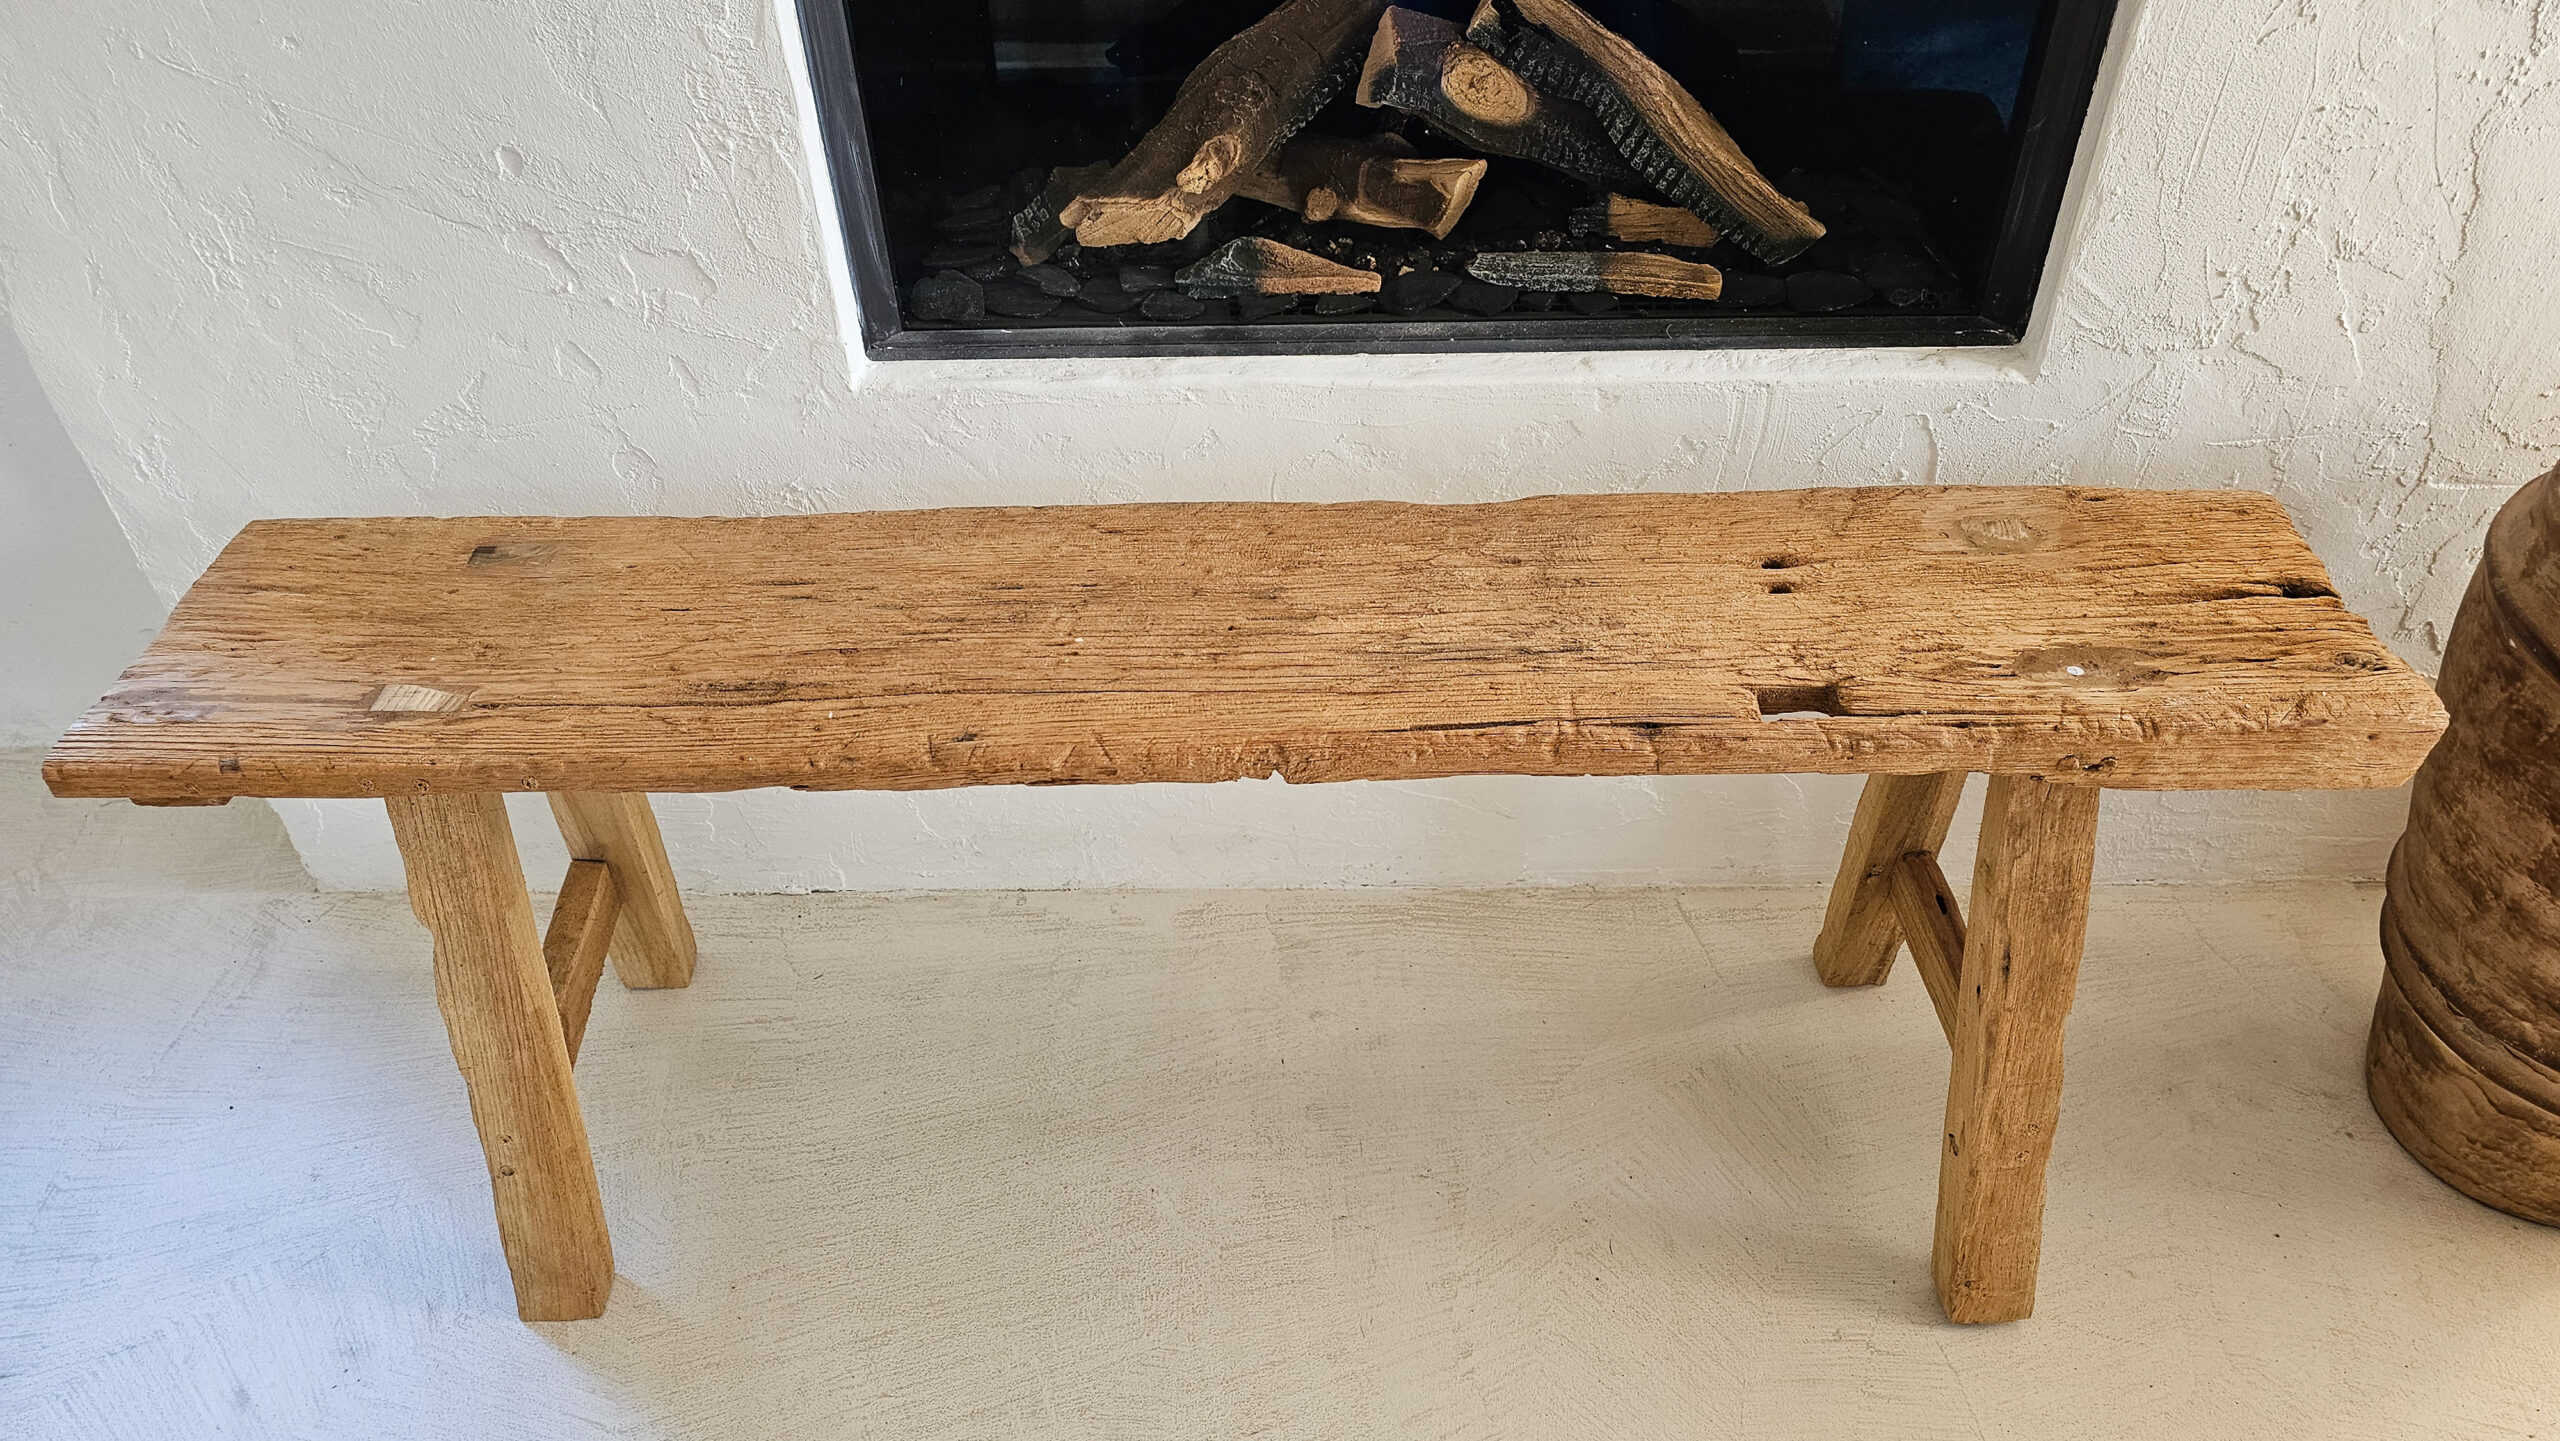 La Sagrera Teak Wood Bench - Rustic Indoor/Outdoor Bench